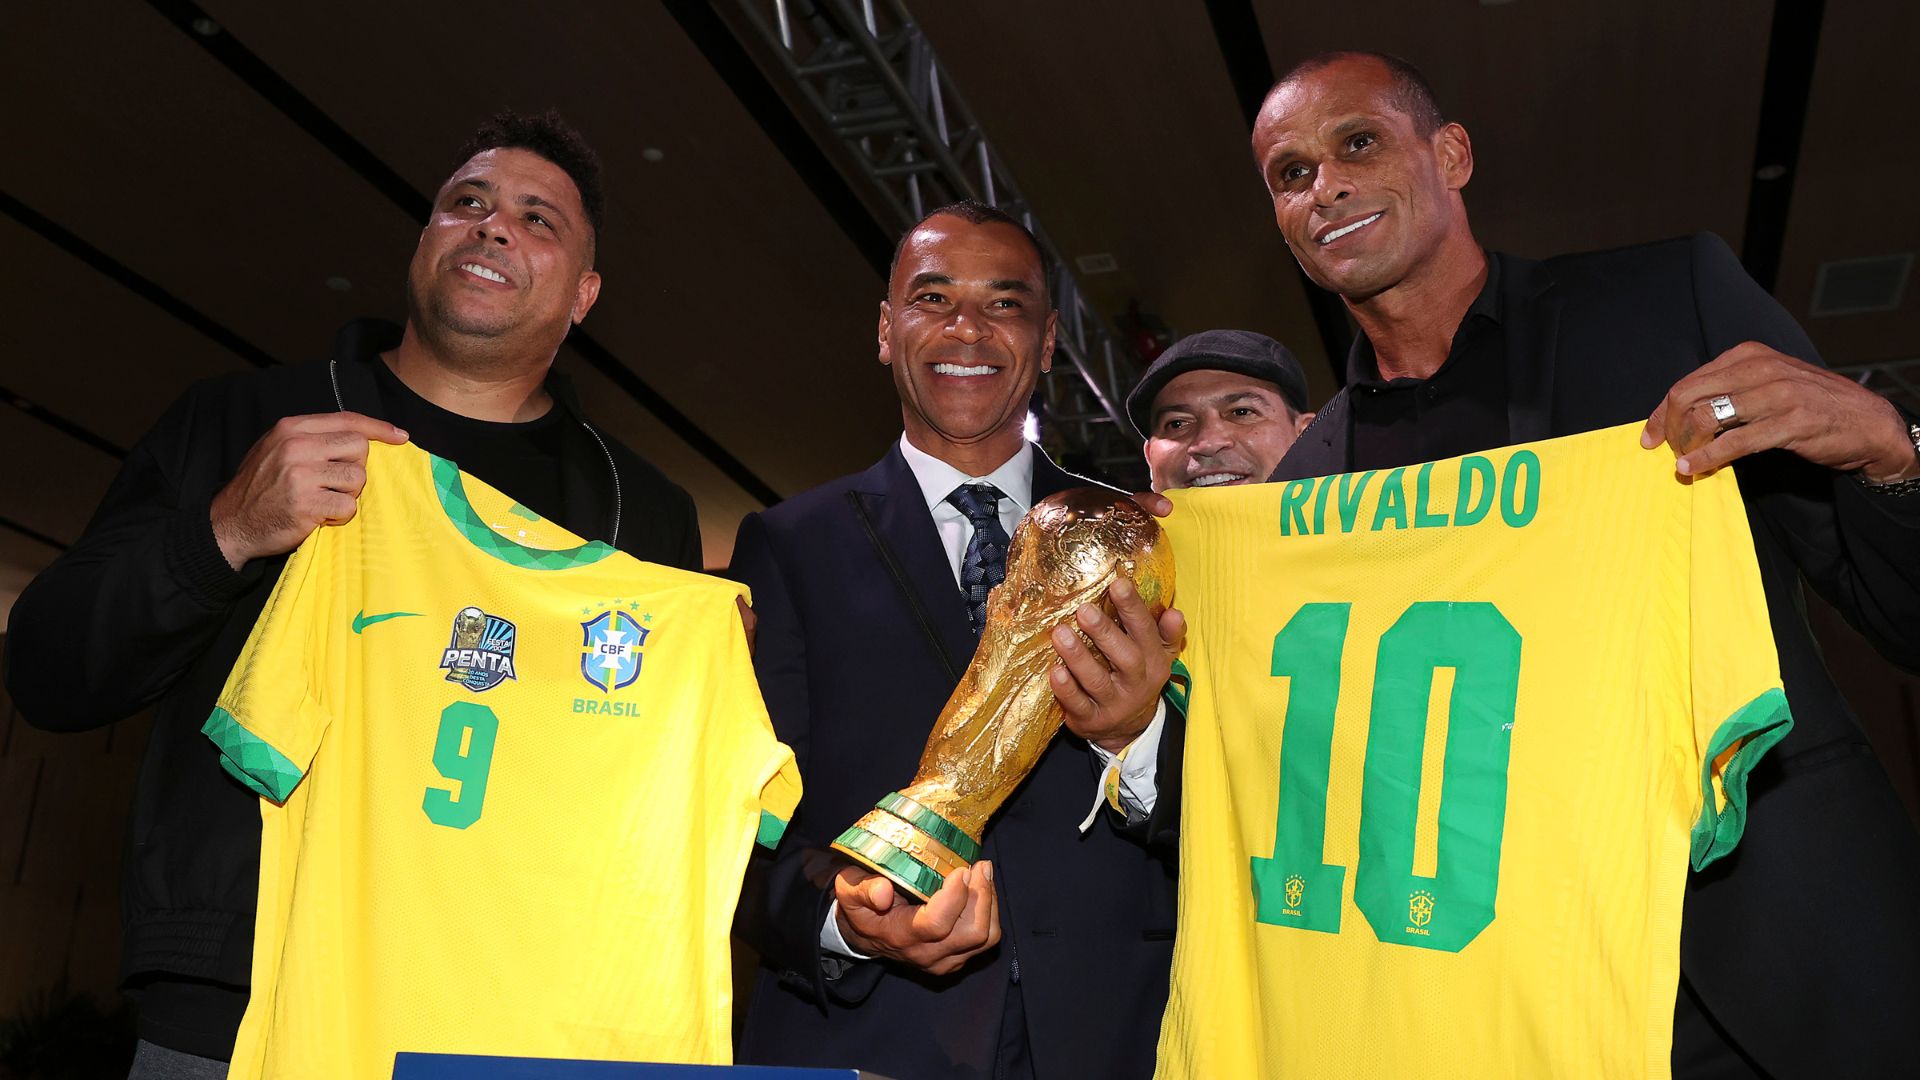 Rivaldo e Ronaldo ao lado de Cafu, em evento comemorativo (Crédito: Getty Images)